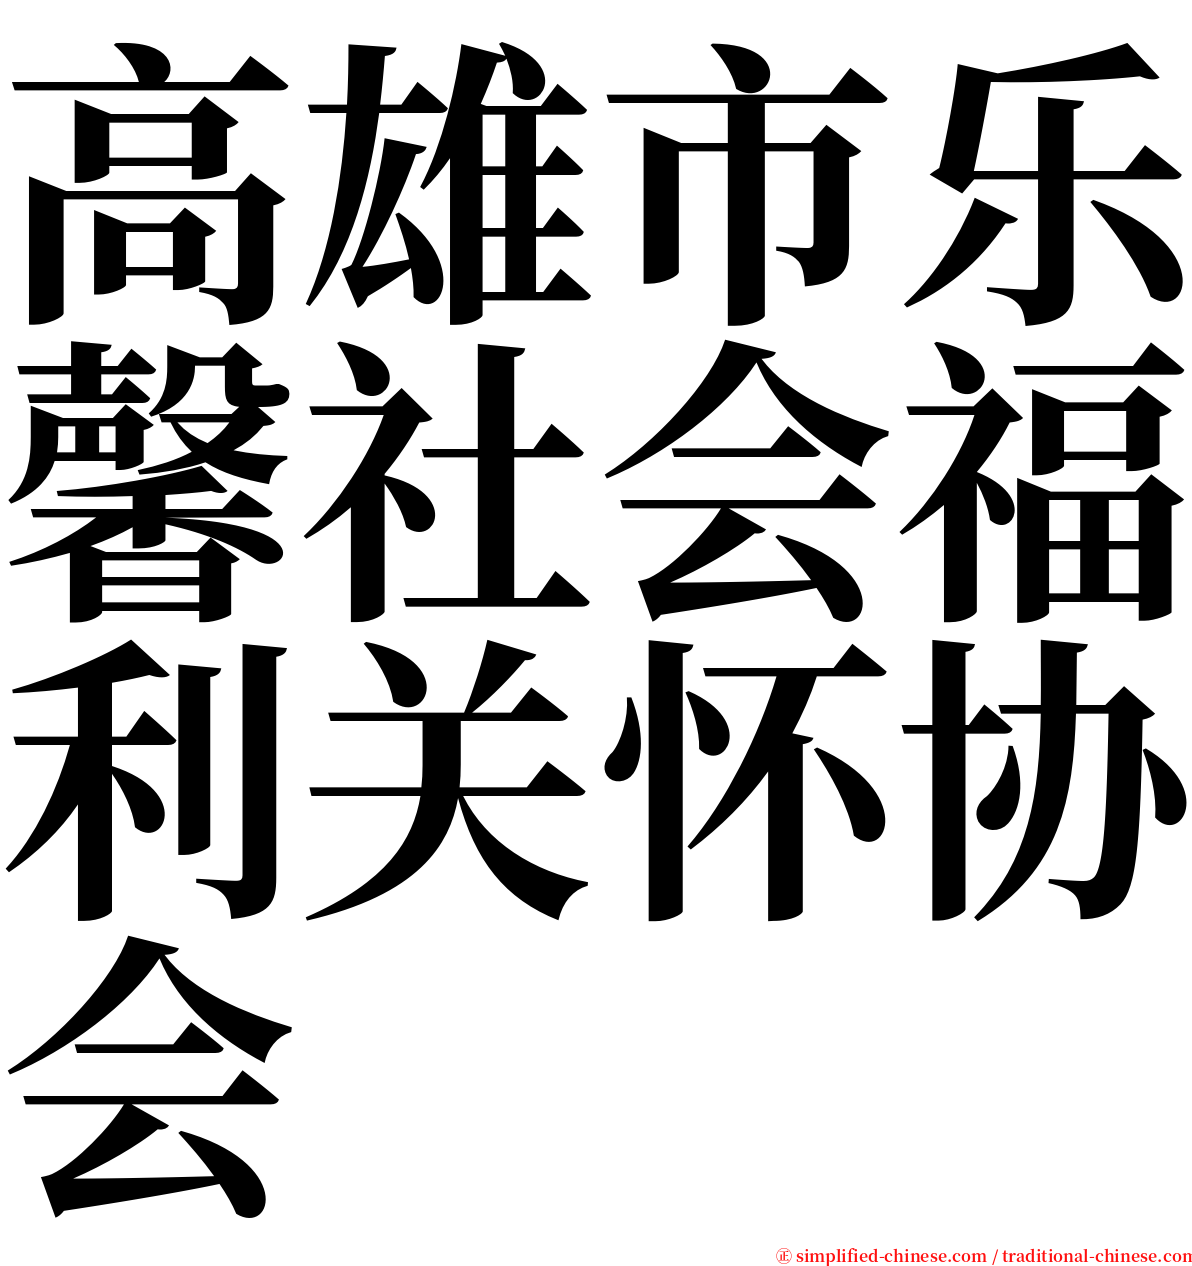 高雄市乐馨社会福利关怀协会 serif font